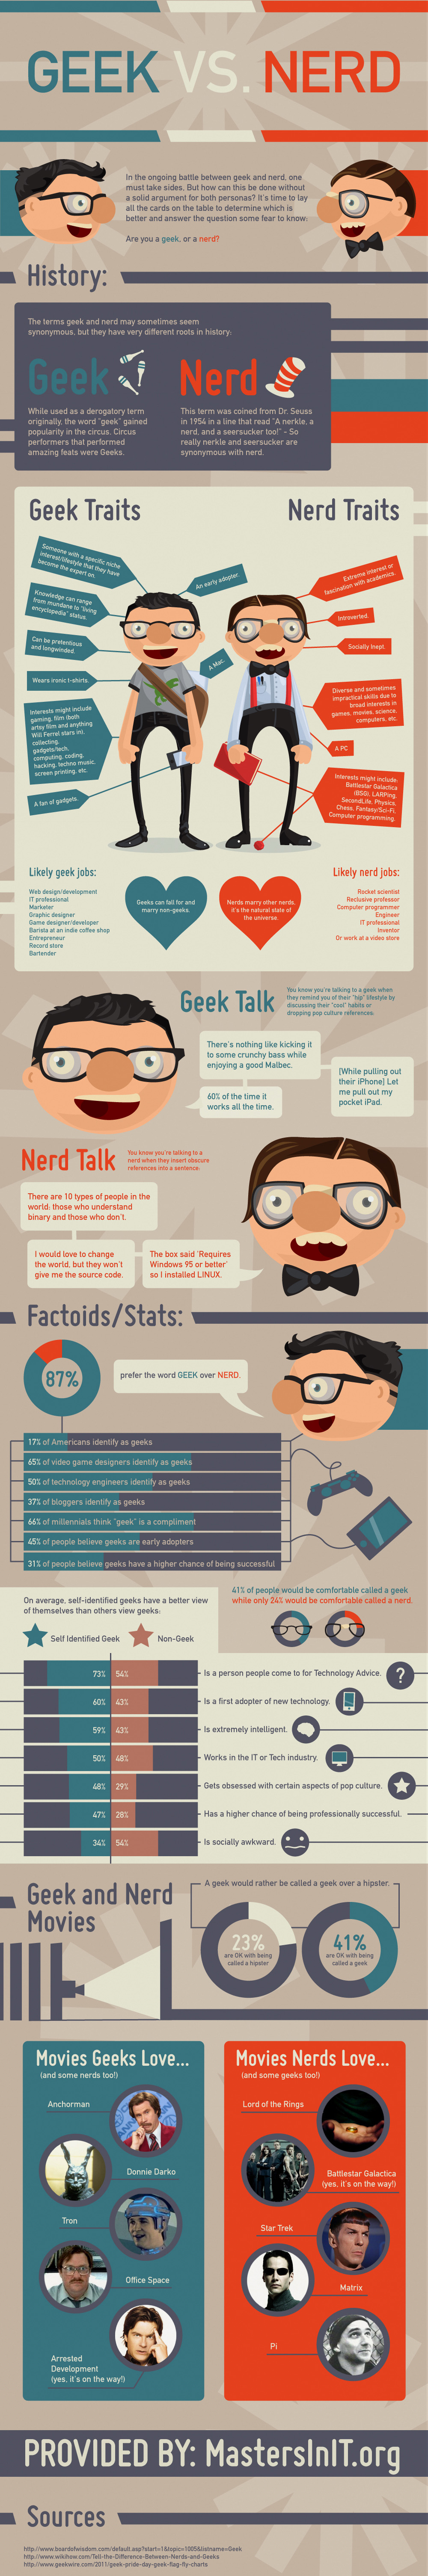 Geeks vs. Nerds